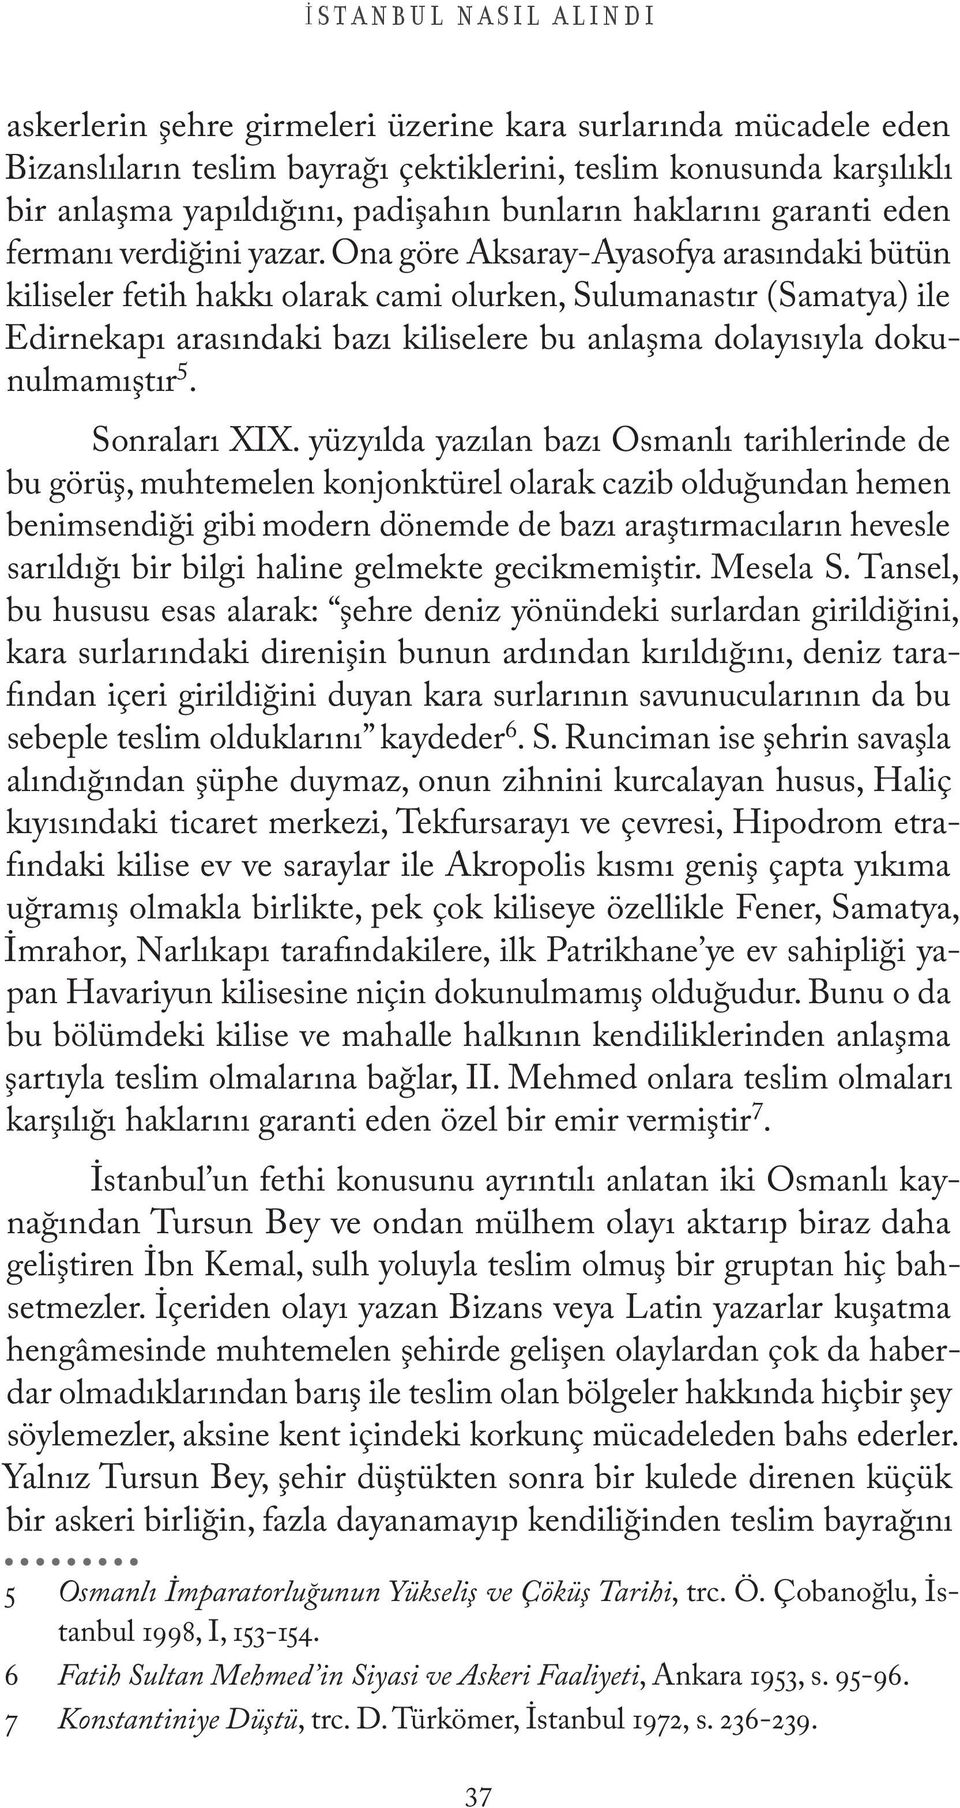 Ona göre Aksaray-Ayasofya arasındaki bütün kiliseler fetih hakkı olarak cami olurken, Sulumanastır (Samatya) ile Edirnekapı arasındaki bazı kiliselere bu anlaşma dolayısıyla dokunulmamıştır 5.